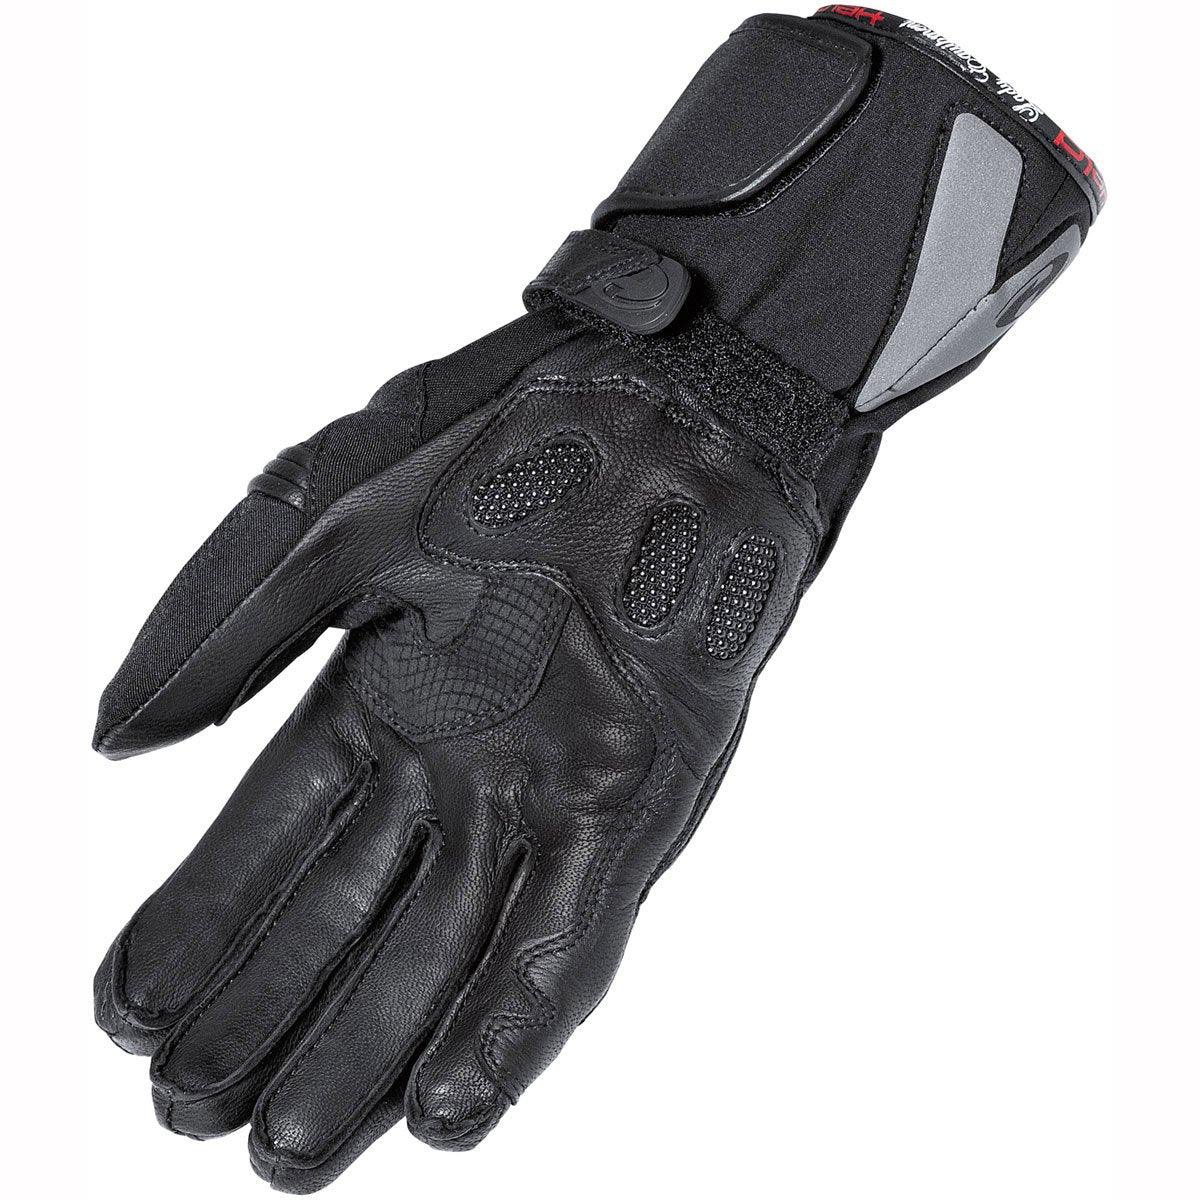 Held 2245 Rachel Gloves Ladies GTX Black - Waterproof Motorcycle Gloves